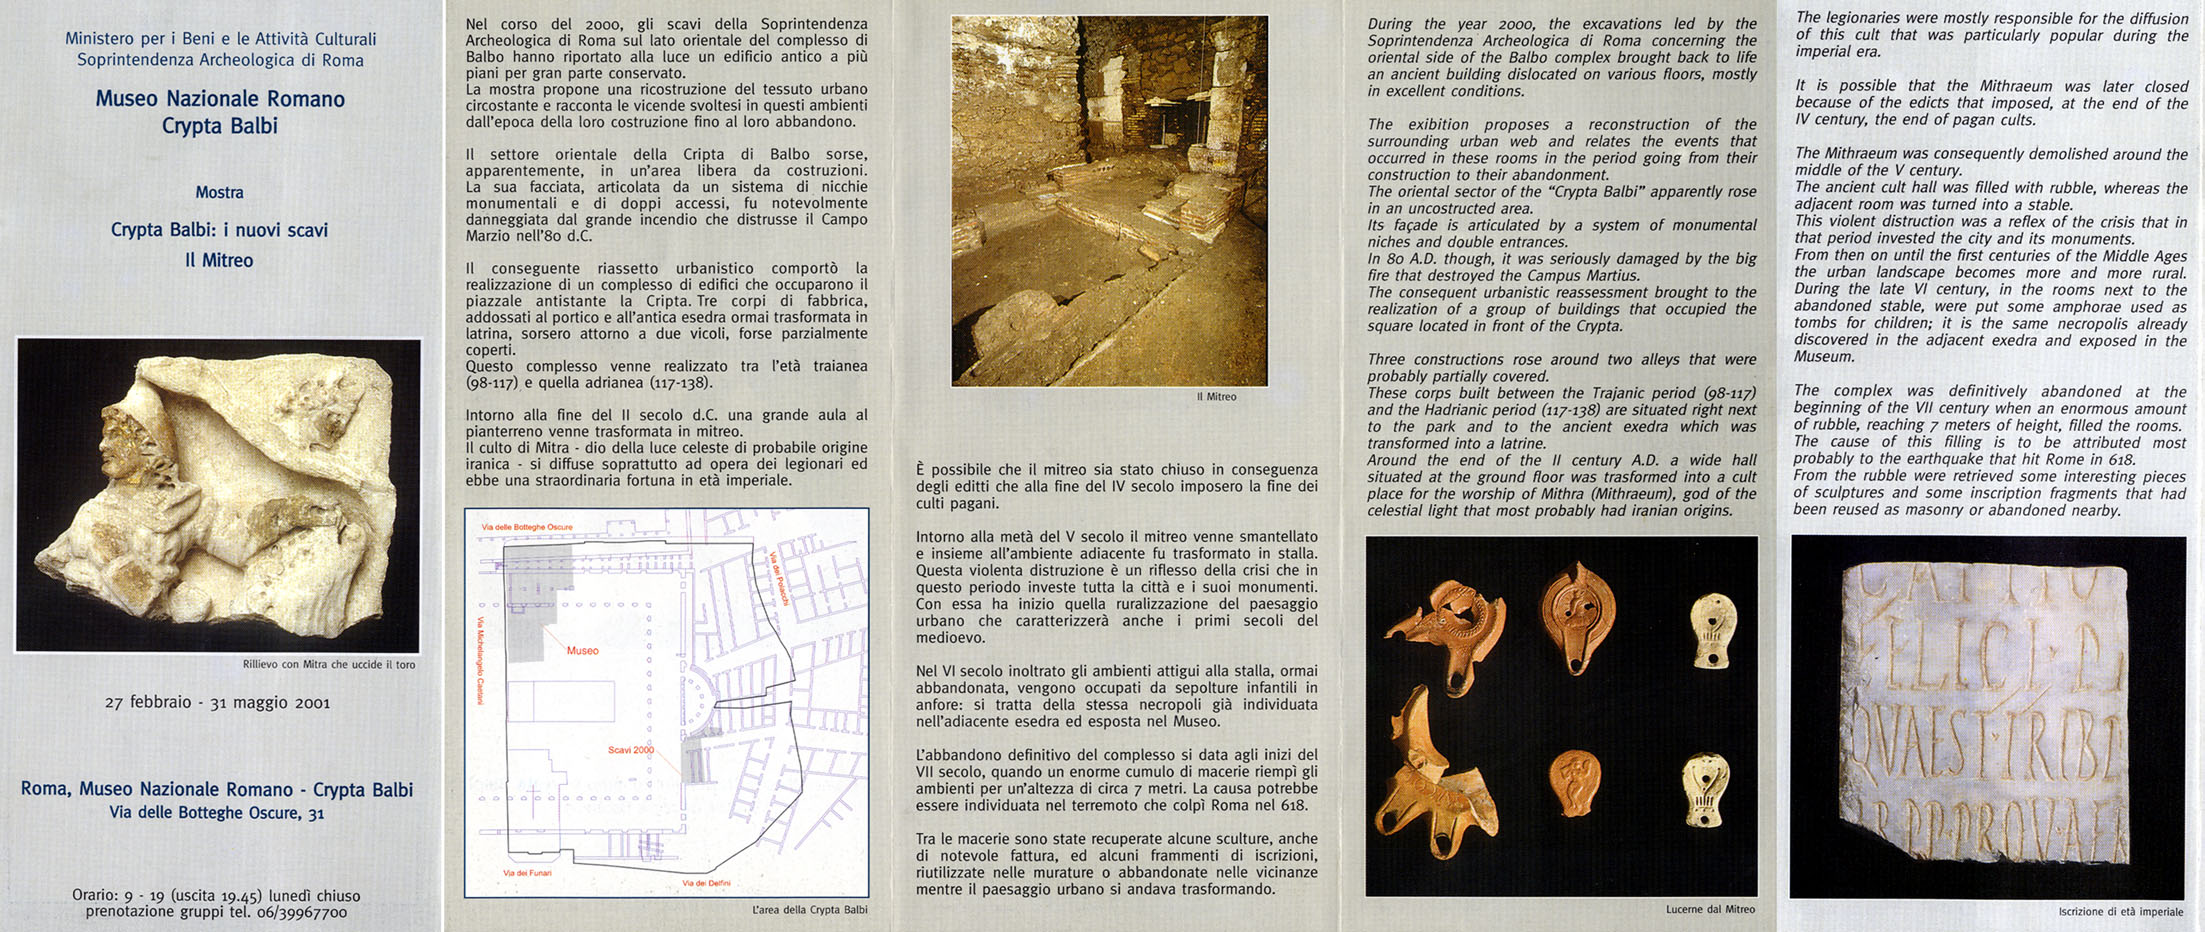 Panfleto distribuido a los visitantes del complejo arqueológico de la Cripta Balbi.